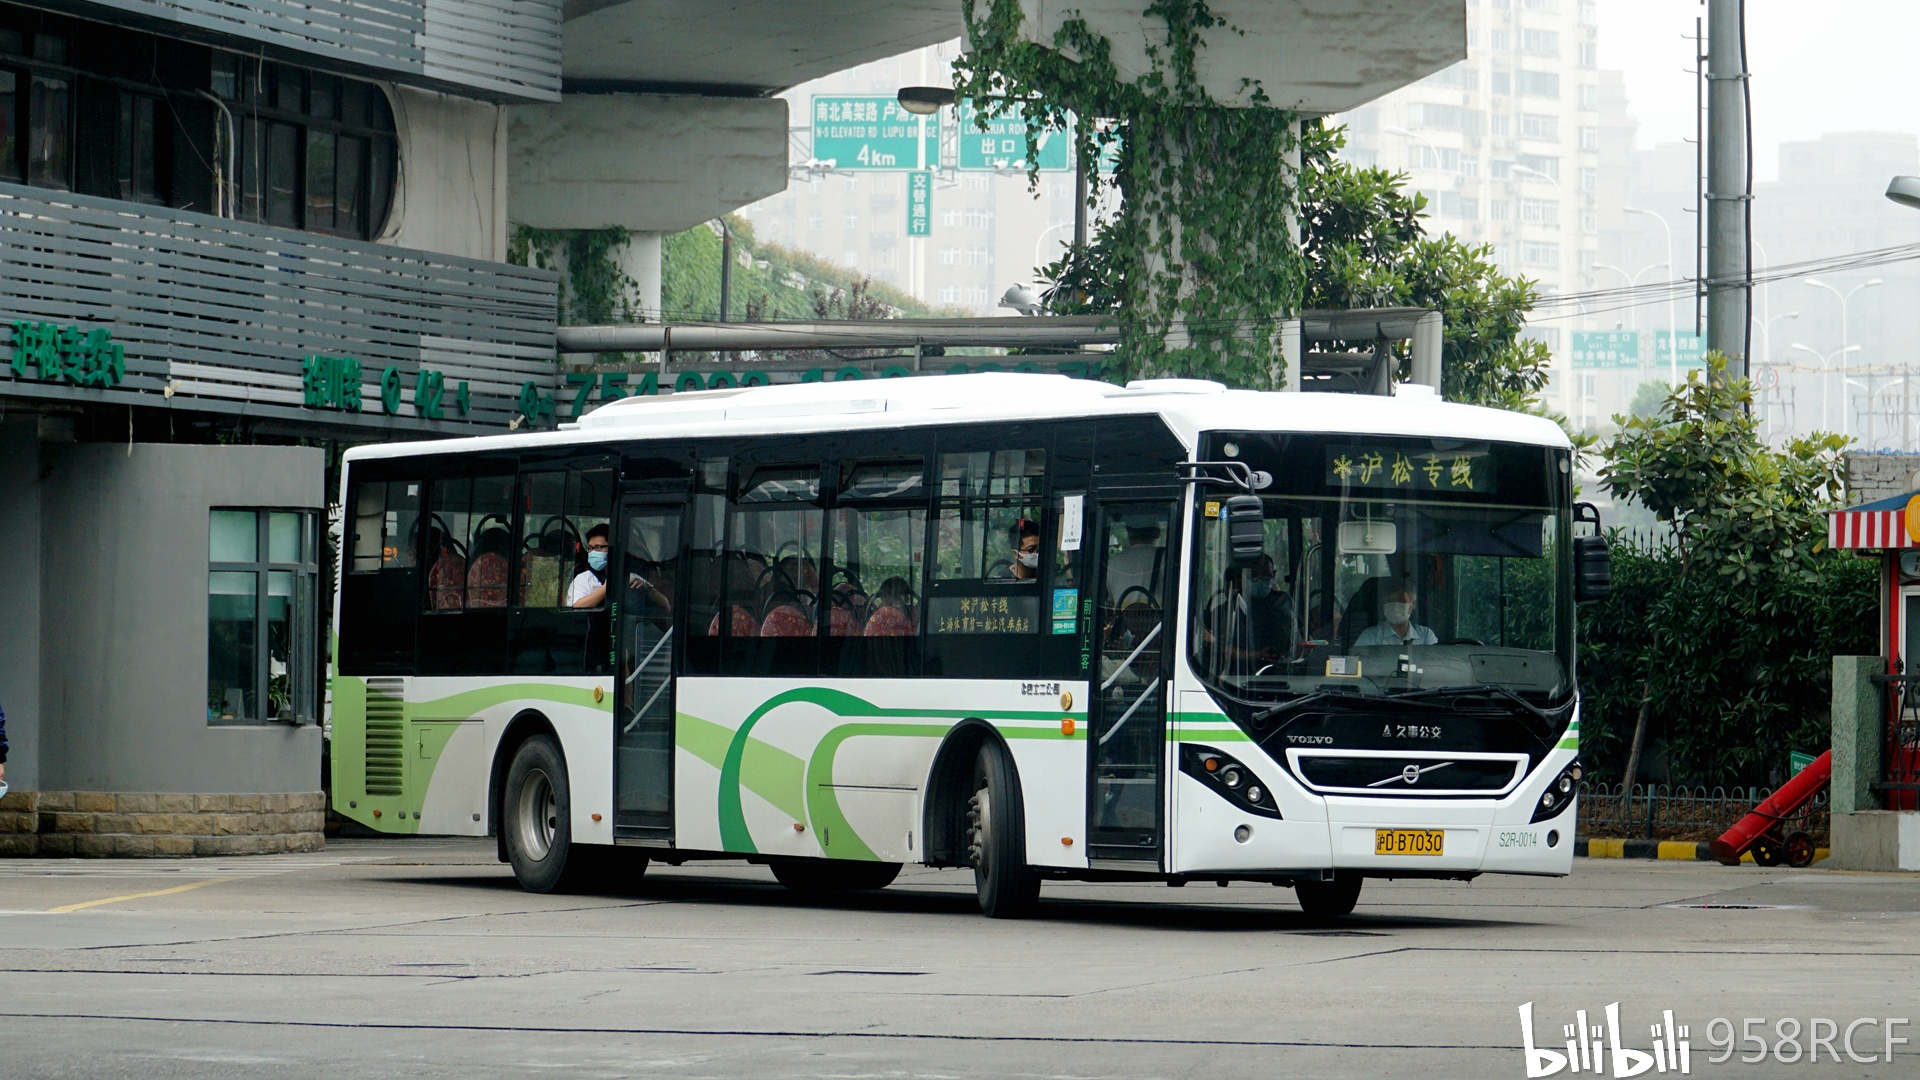 上海公交现役车型图集截止2020年9月申沃篇②